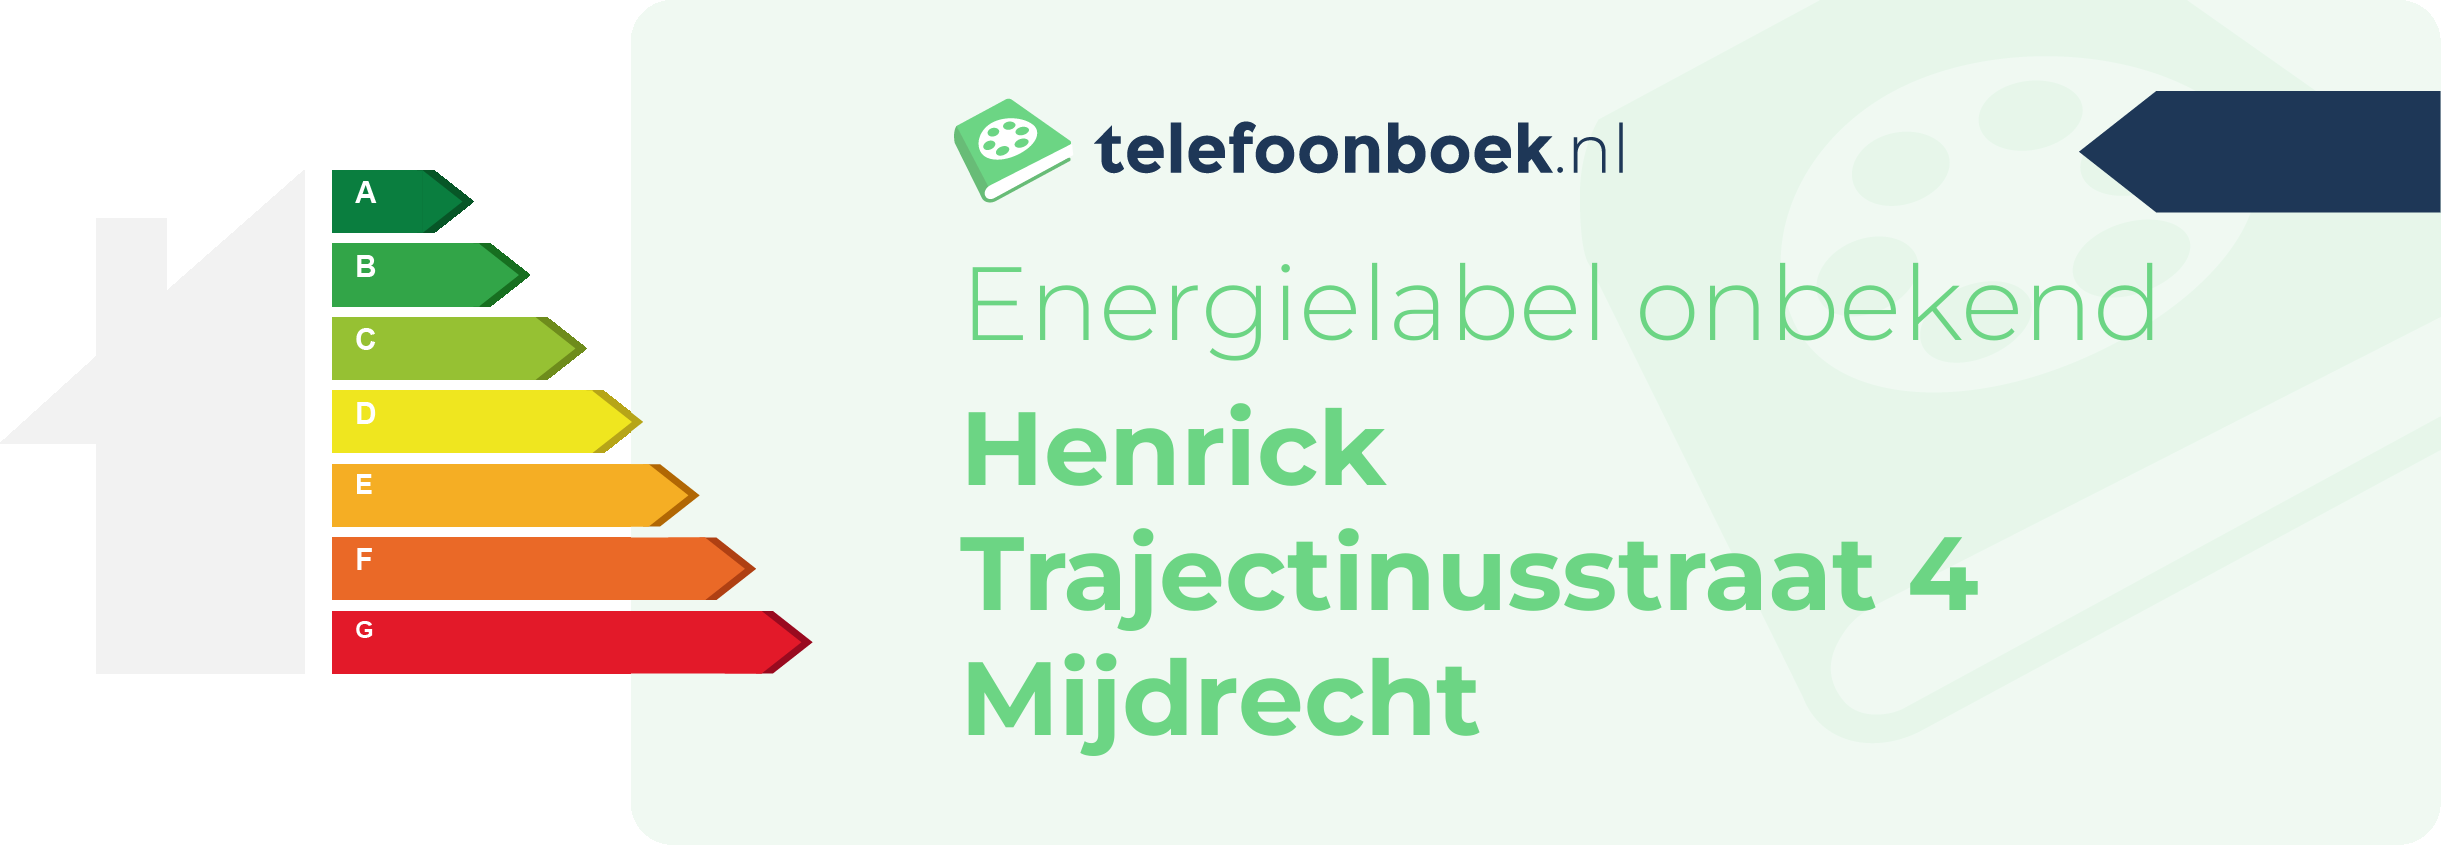 Energielabel Henrick Trajectinusstraat 4 Mijdrecht